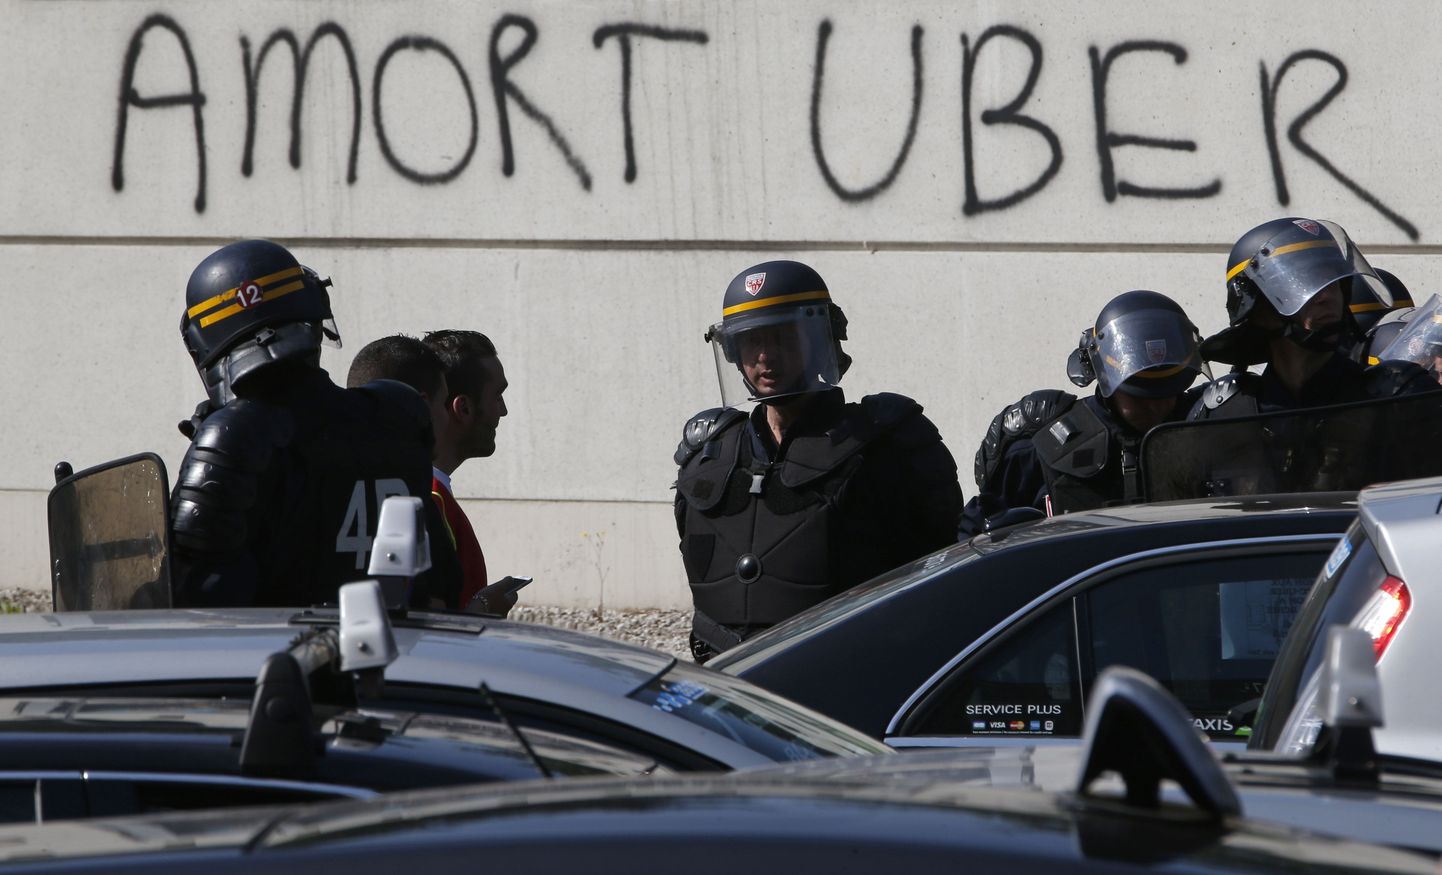 Prantsuse taksojuhid protestivad mobiilirakenduse Uber vastu.